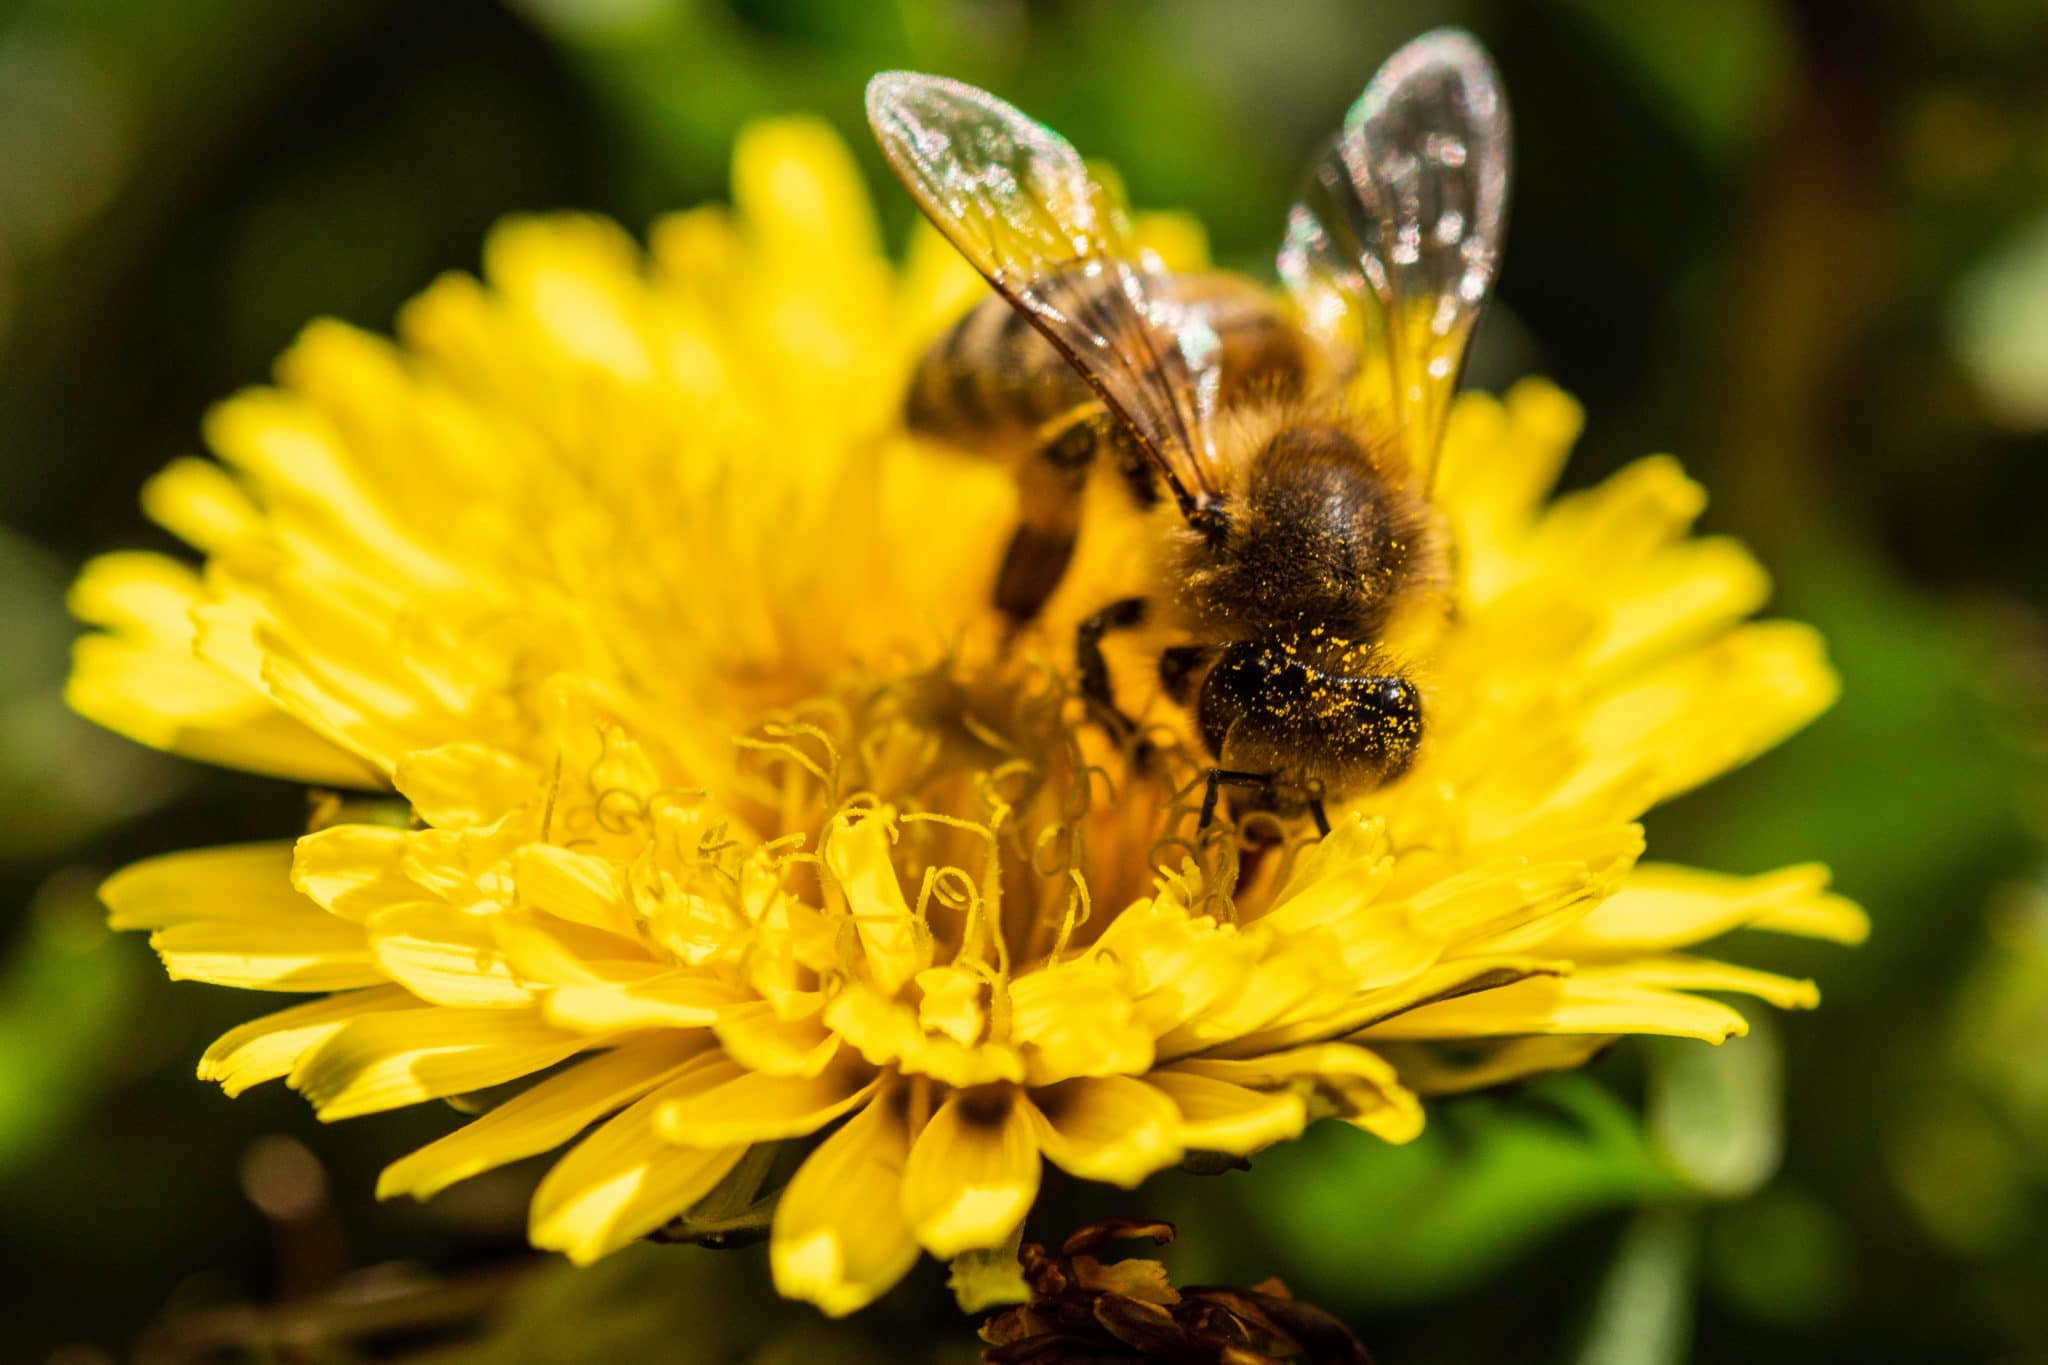 Comment aider les abeilles?